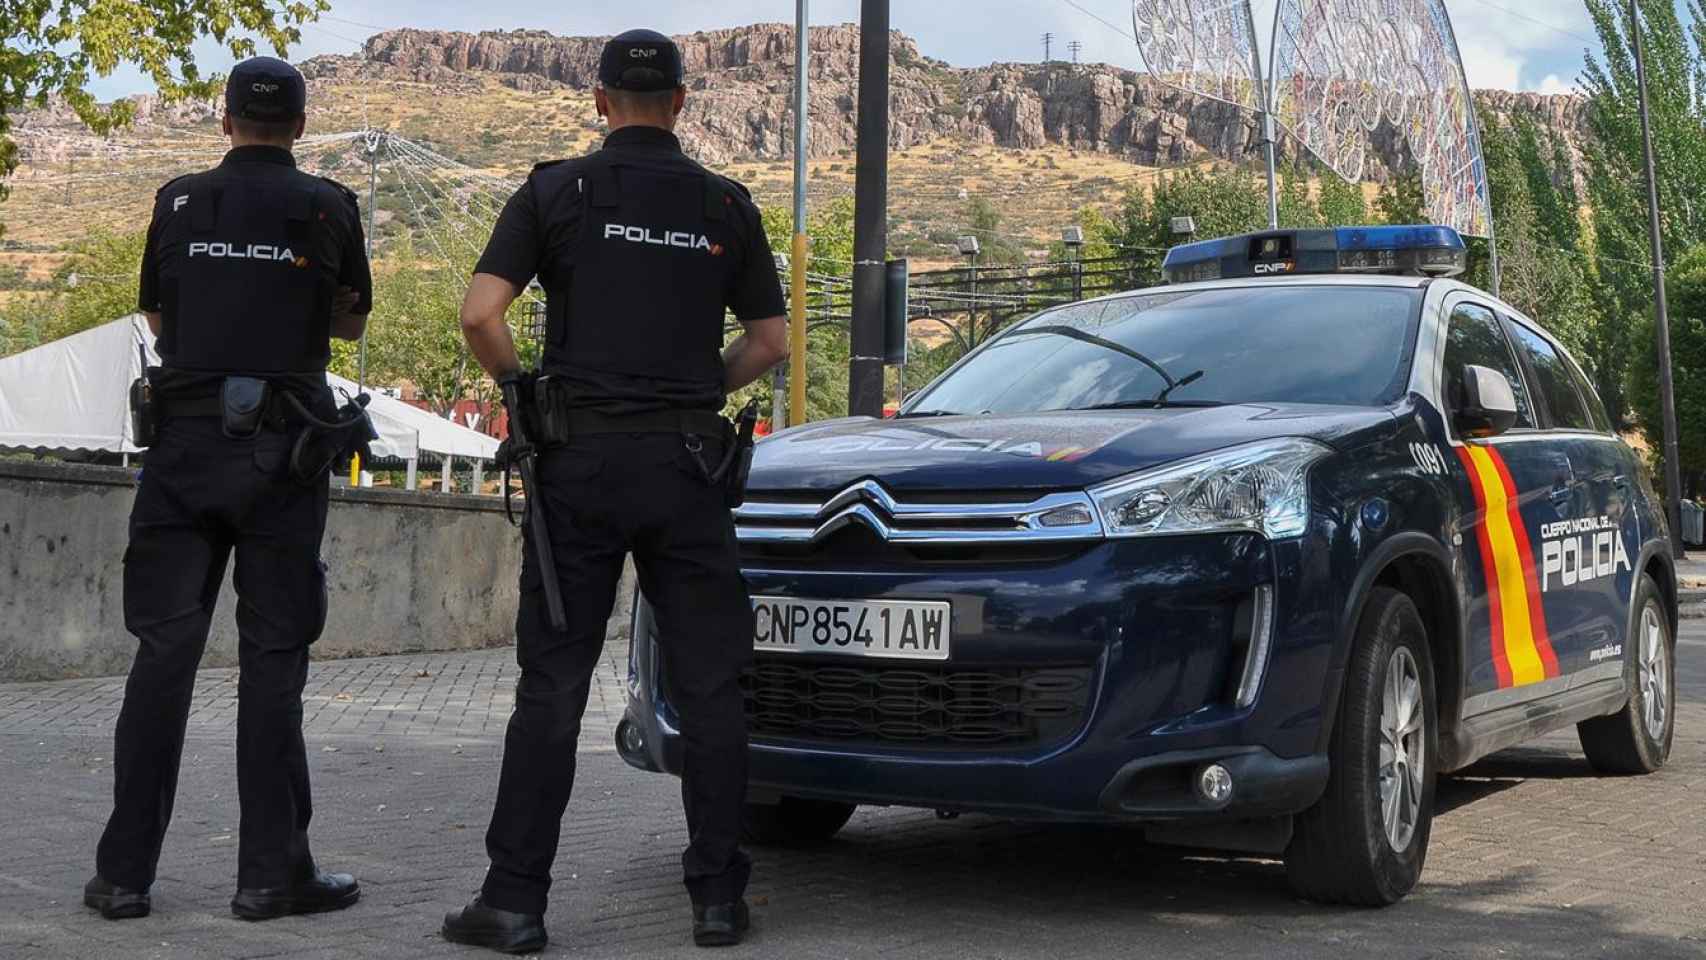 Policía Nacional en Puertollano (Ciudad Real). Imagen de archivo